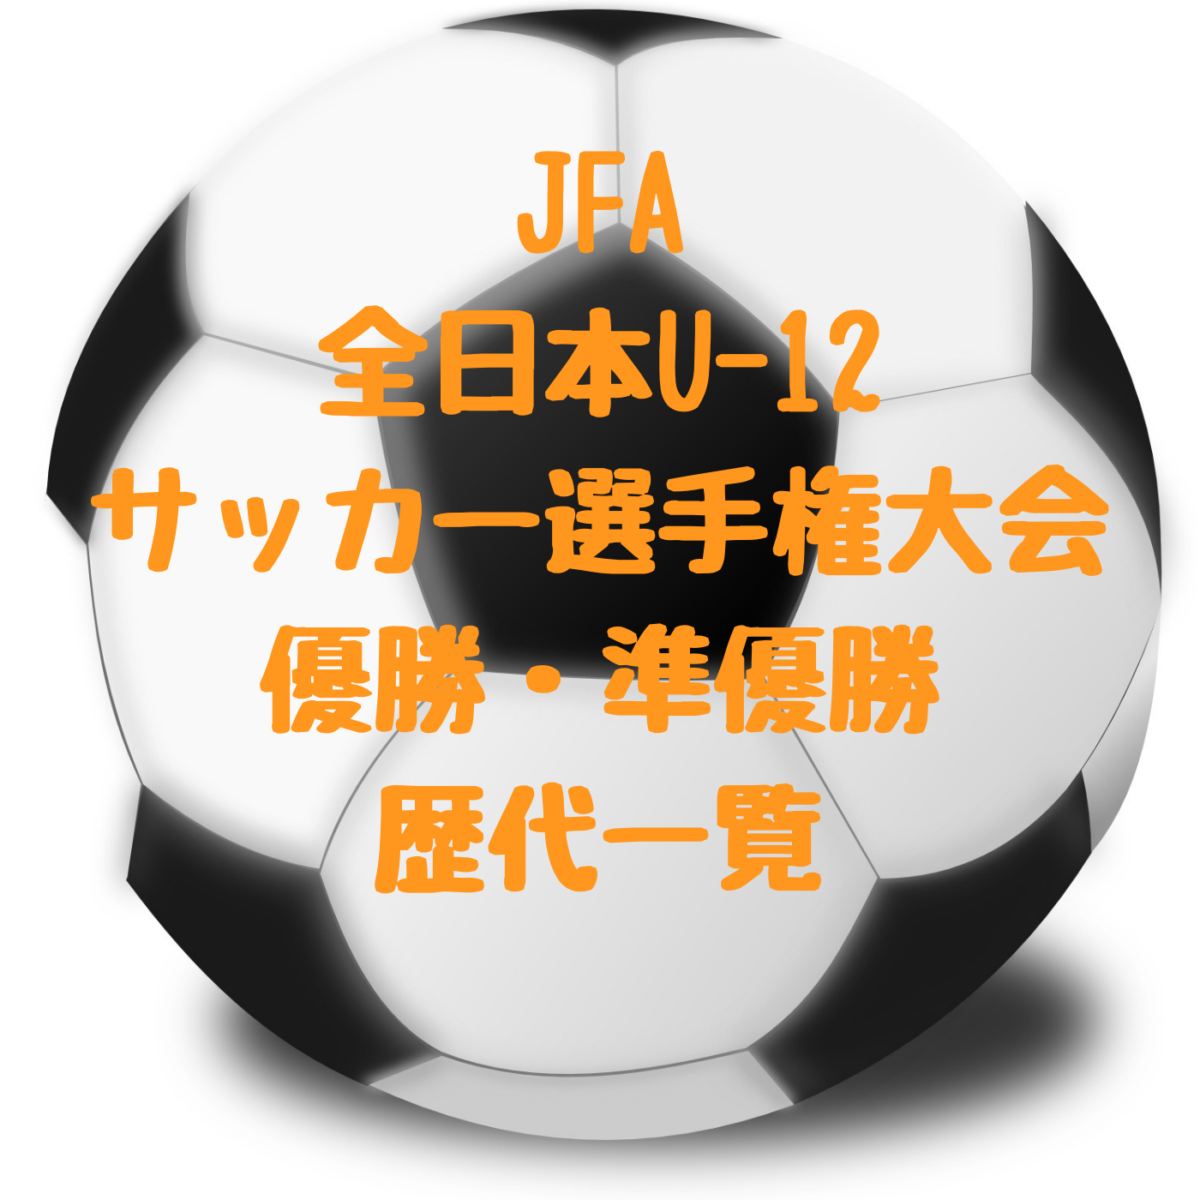 全日本少年サッカー大会 全国大会 歴代優勝 準優勝チームと要項